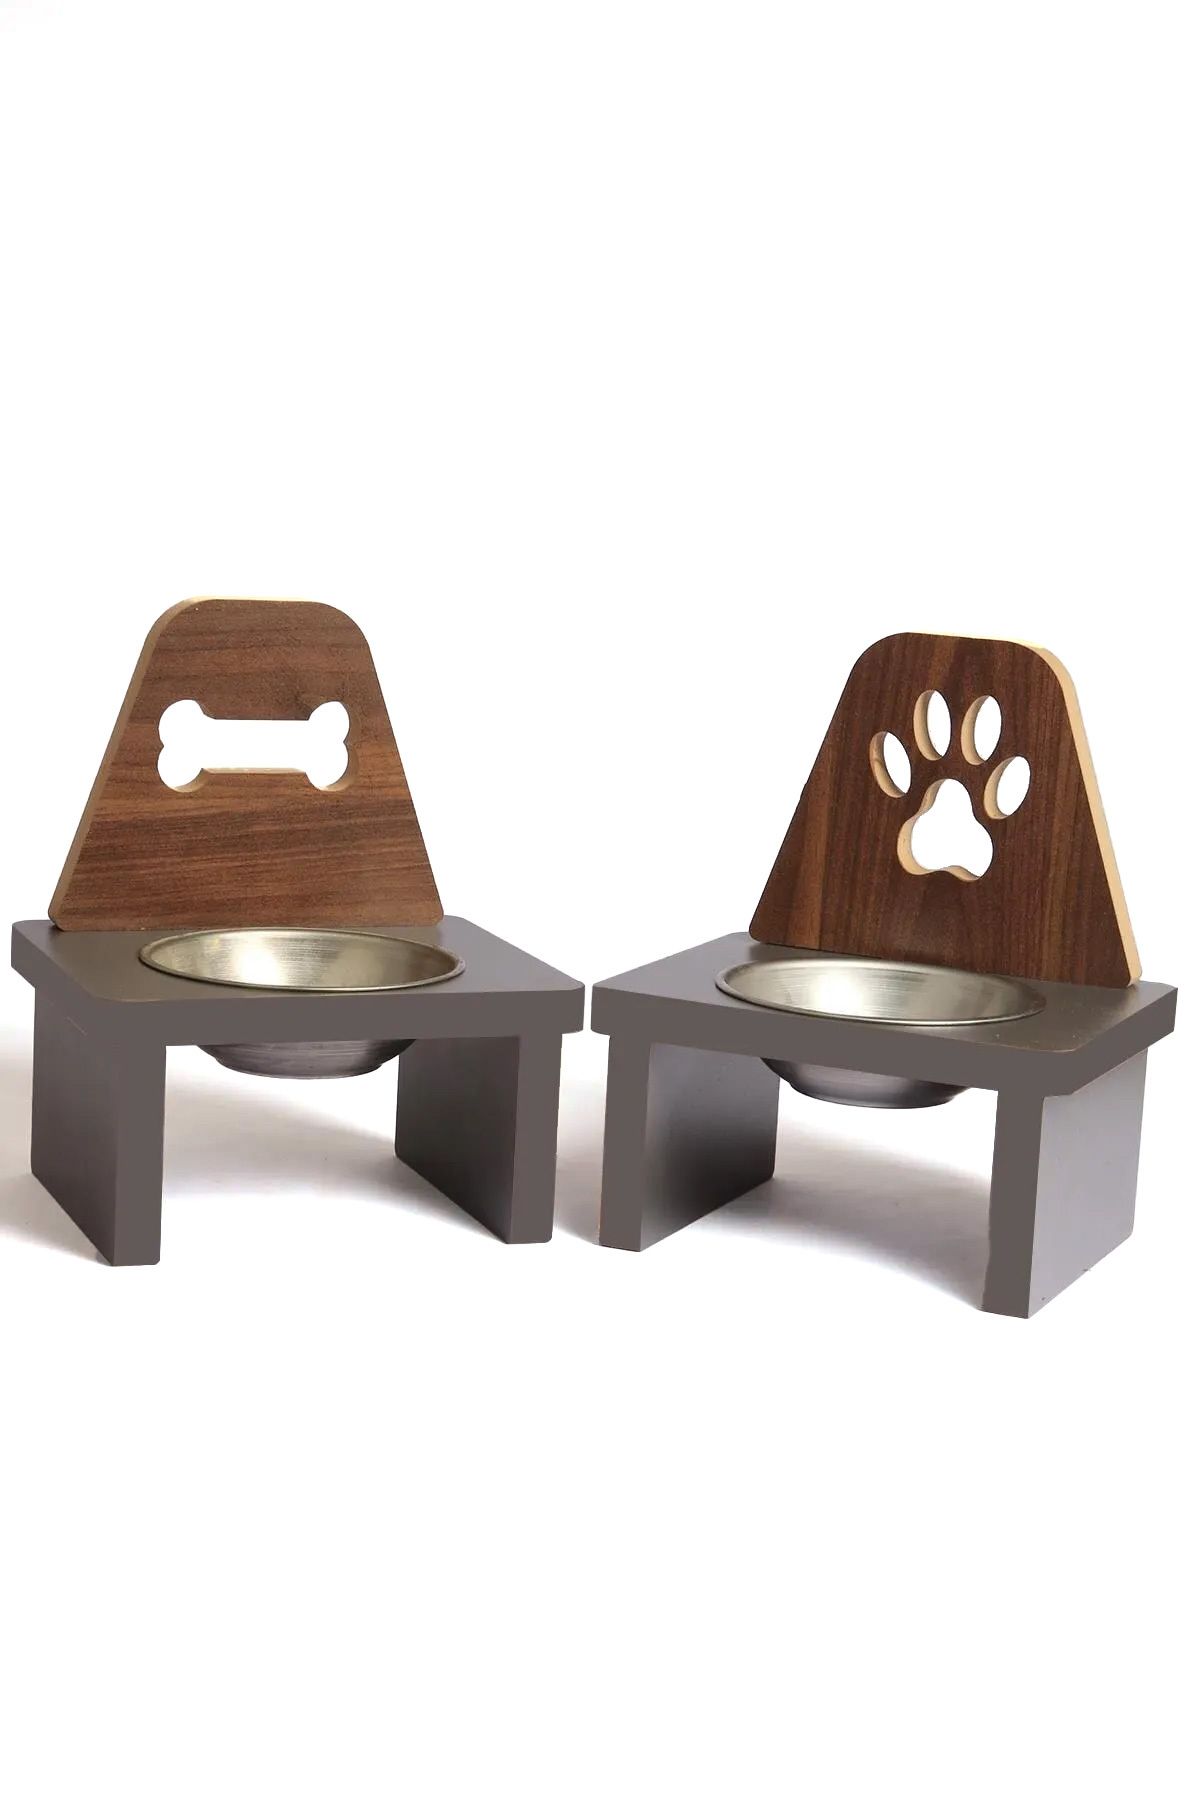 MiniHediye Ahşap Kedi Köpek Mama Su Kabı Standı Metal Suluk Mamalık Çelik Kaseli Evcil Hayvan Desenli